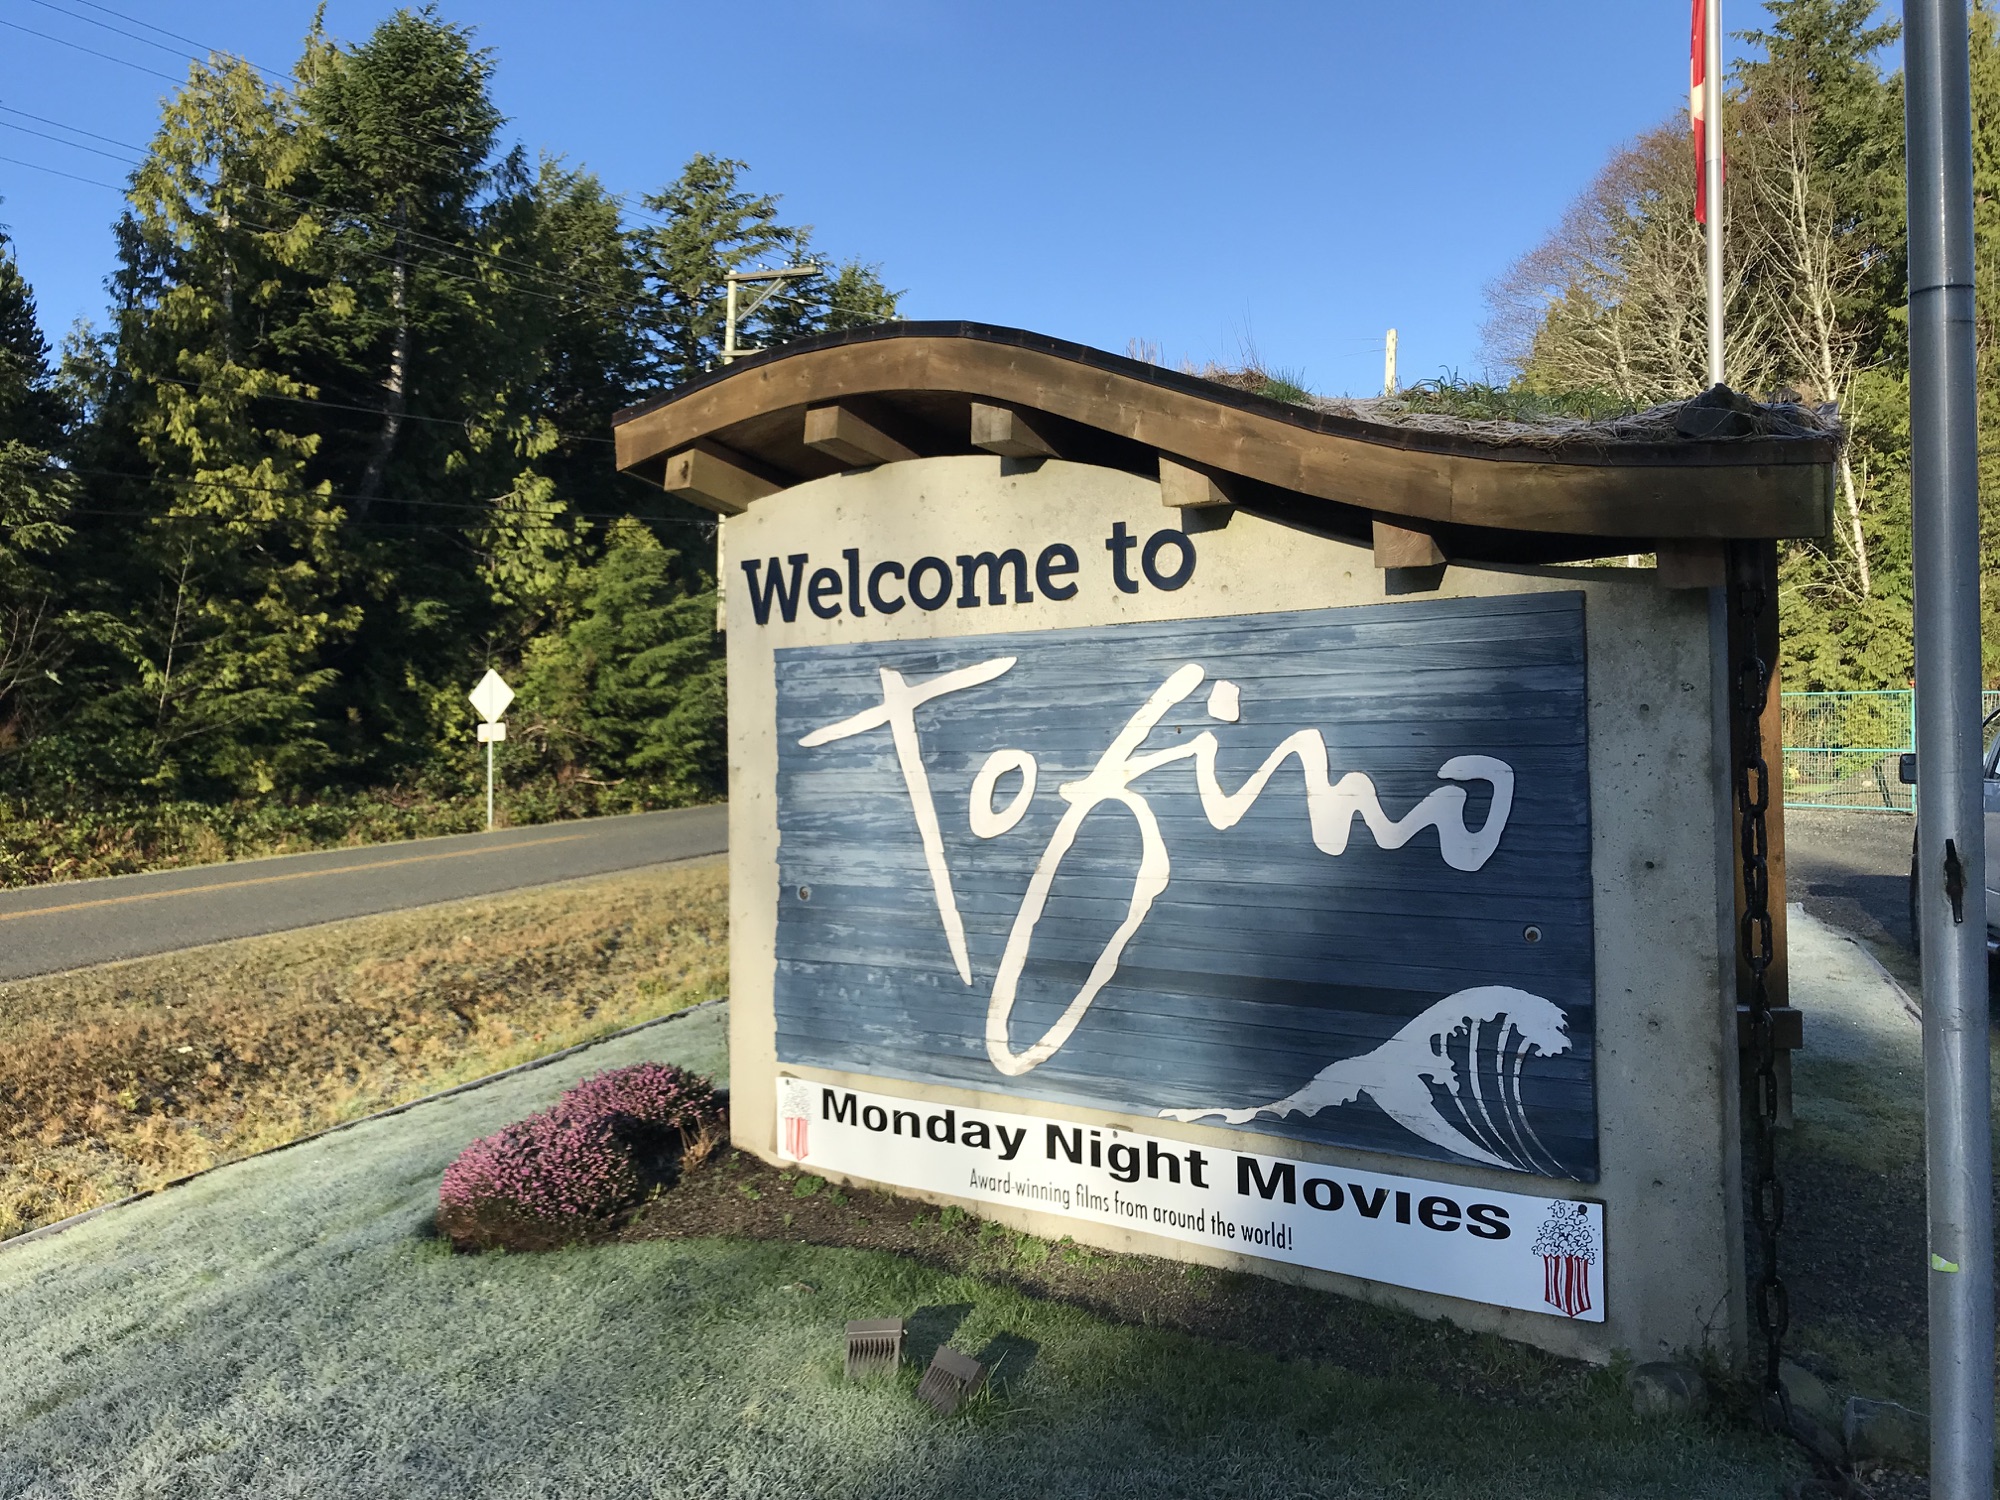 Tofino at Vancouver Island